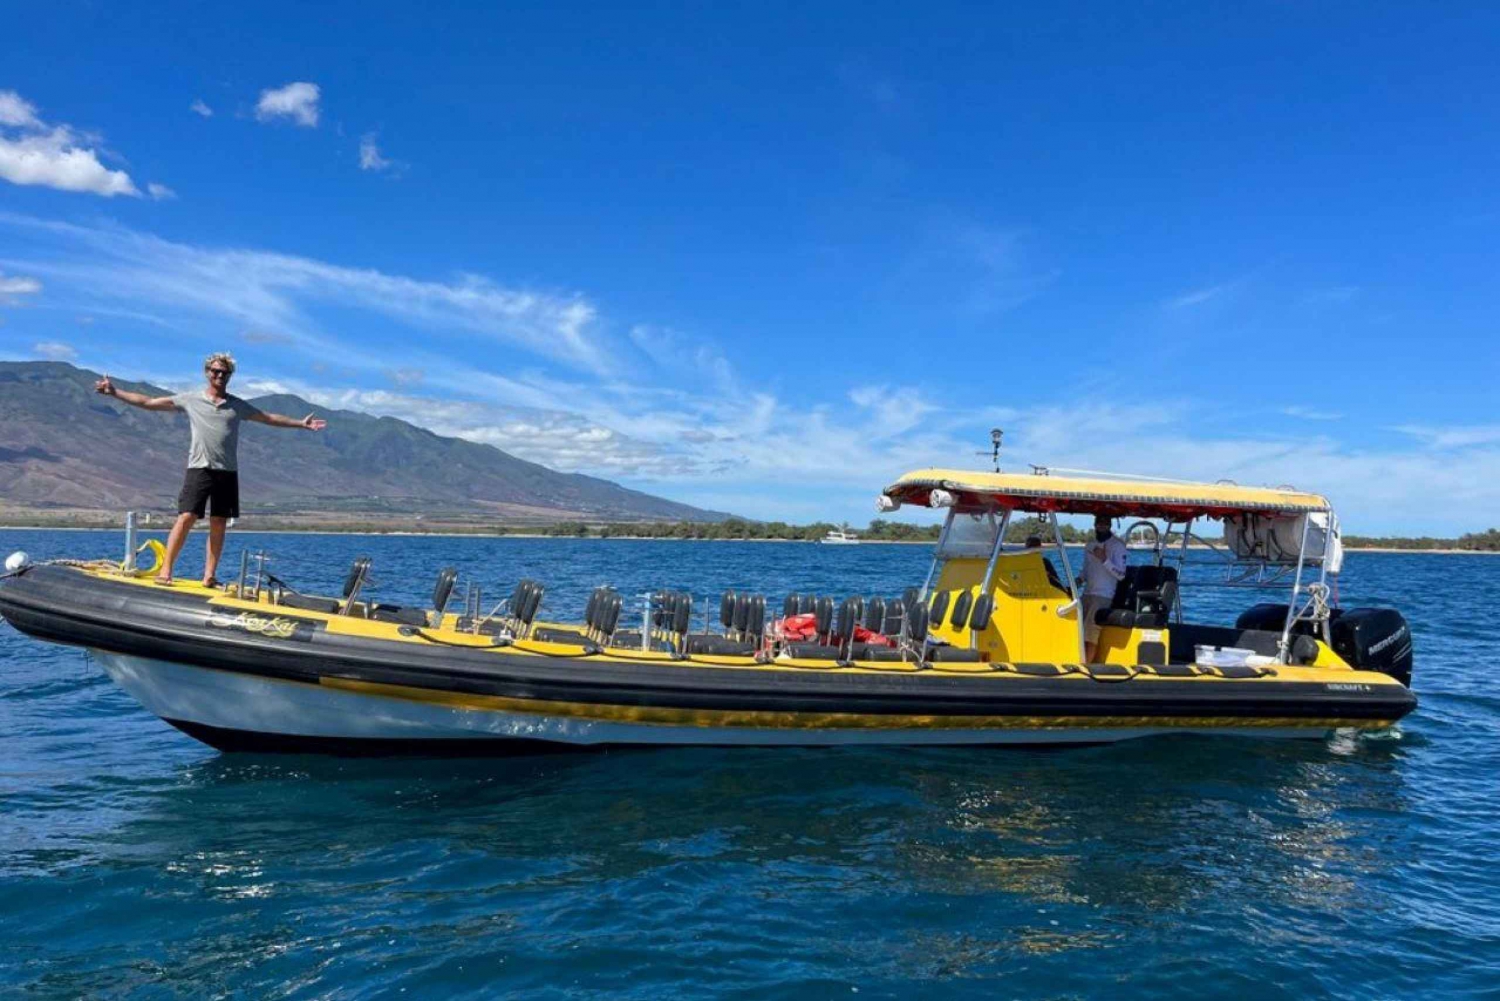 Koa Kai Molokini Snorkeling & Whale Watch a Maui